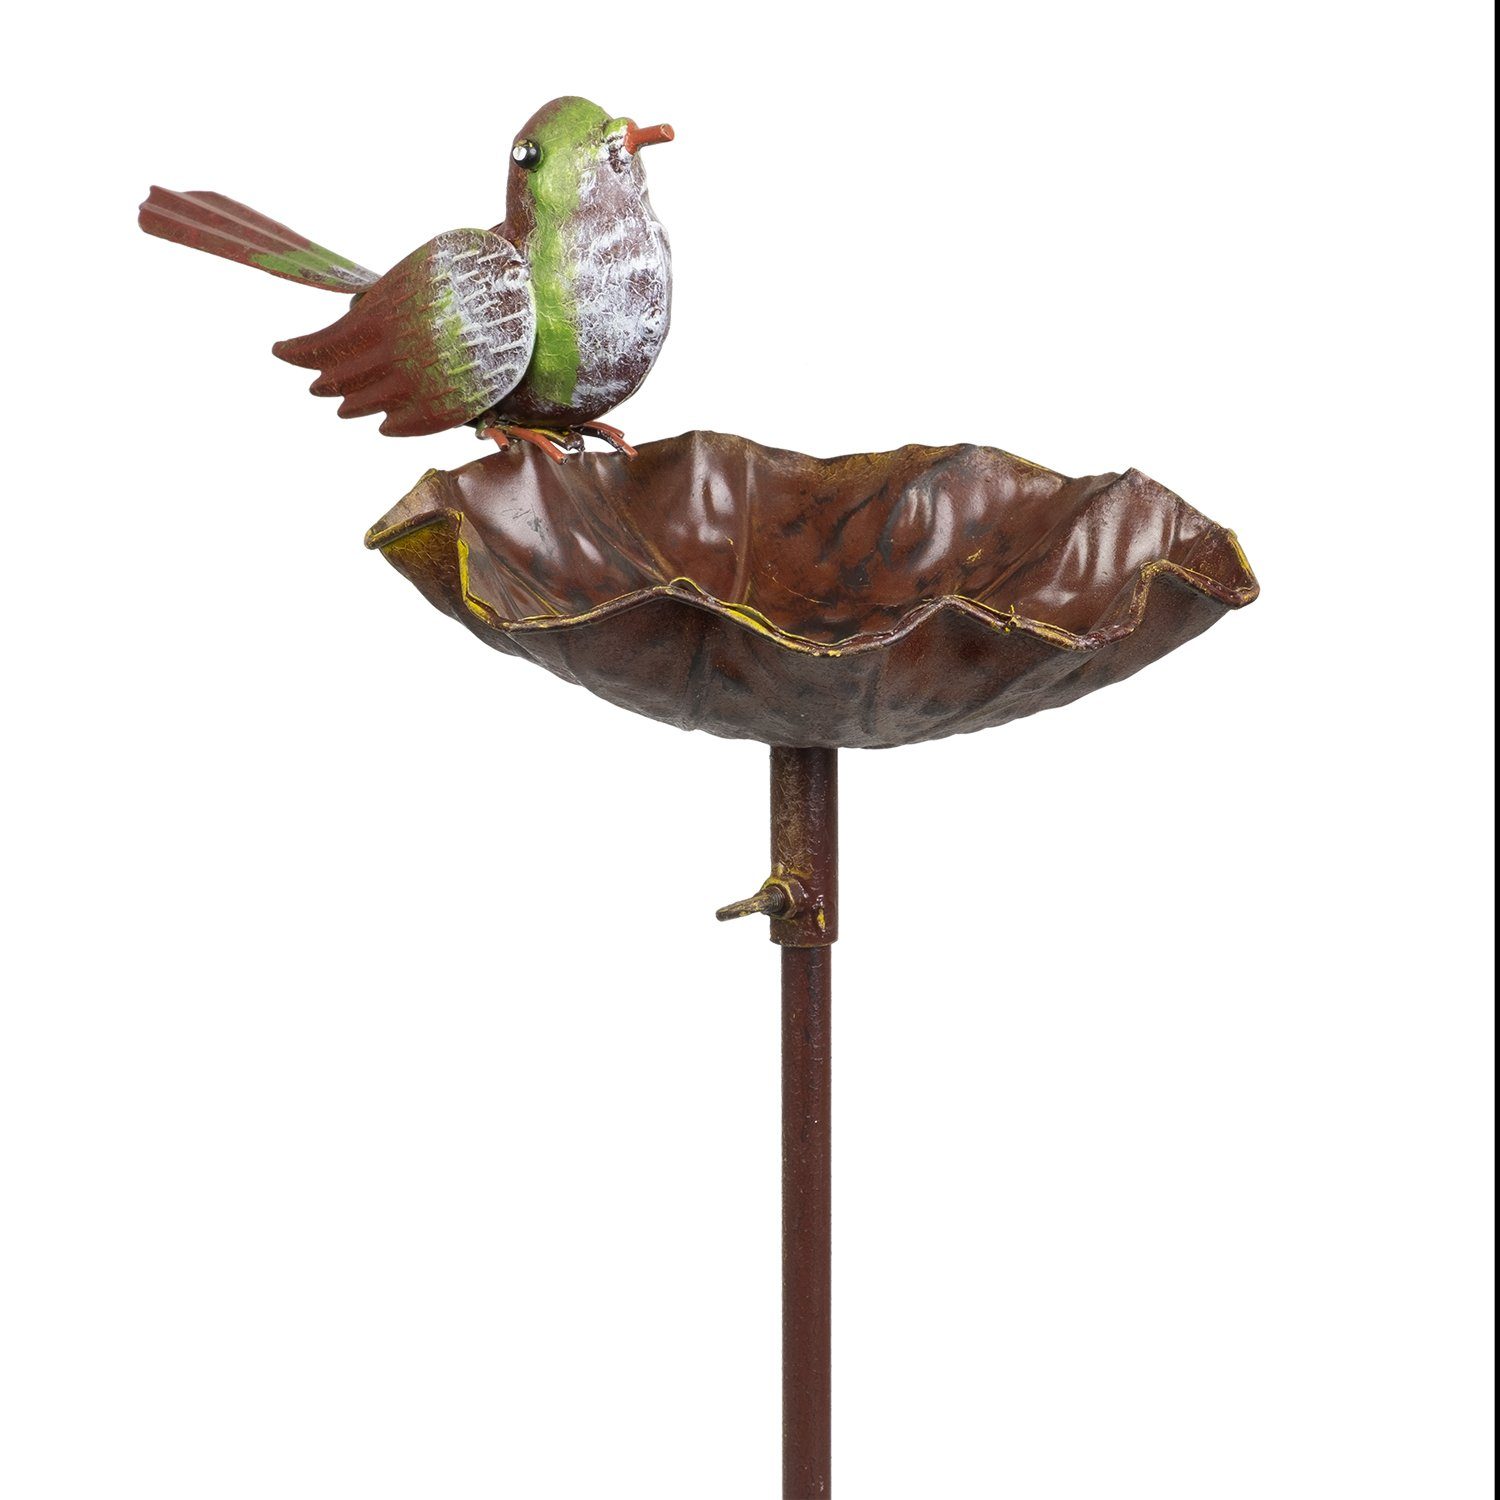 Moritz Gartenstecker Vogeltränke mit grünem Vogel Gartenfigur Gartedekoration Gartenstab Dekostab Metall Erdspieß